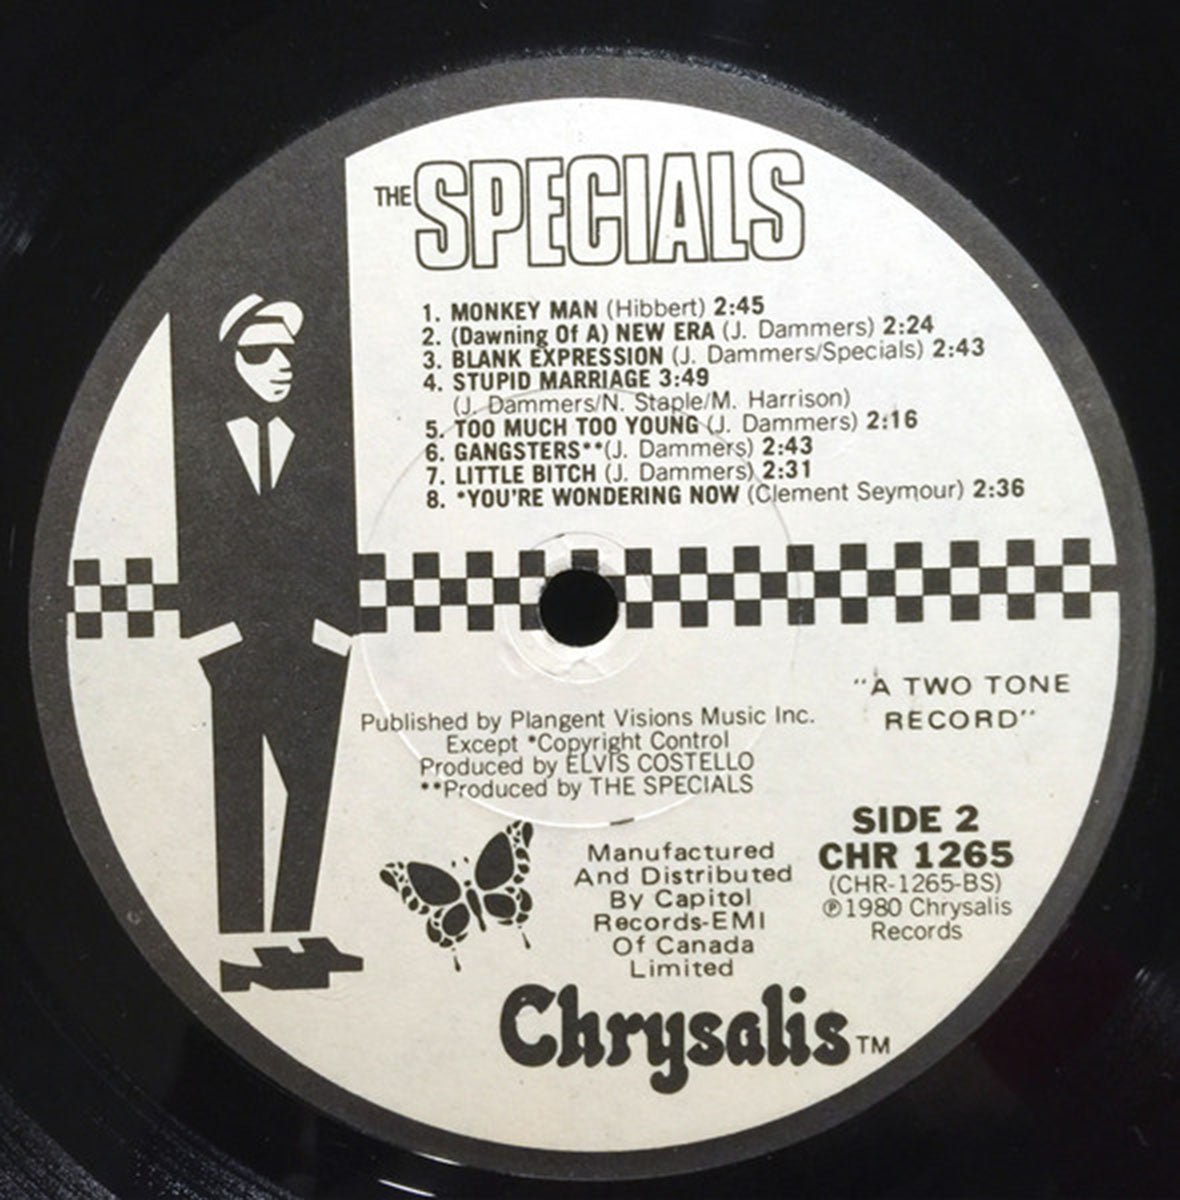 The Specials – The Specials - 1980 Pressing!